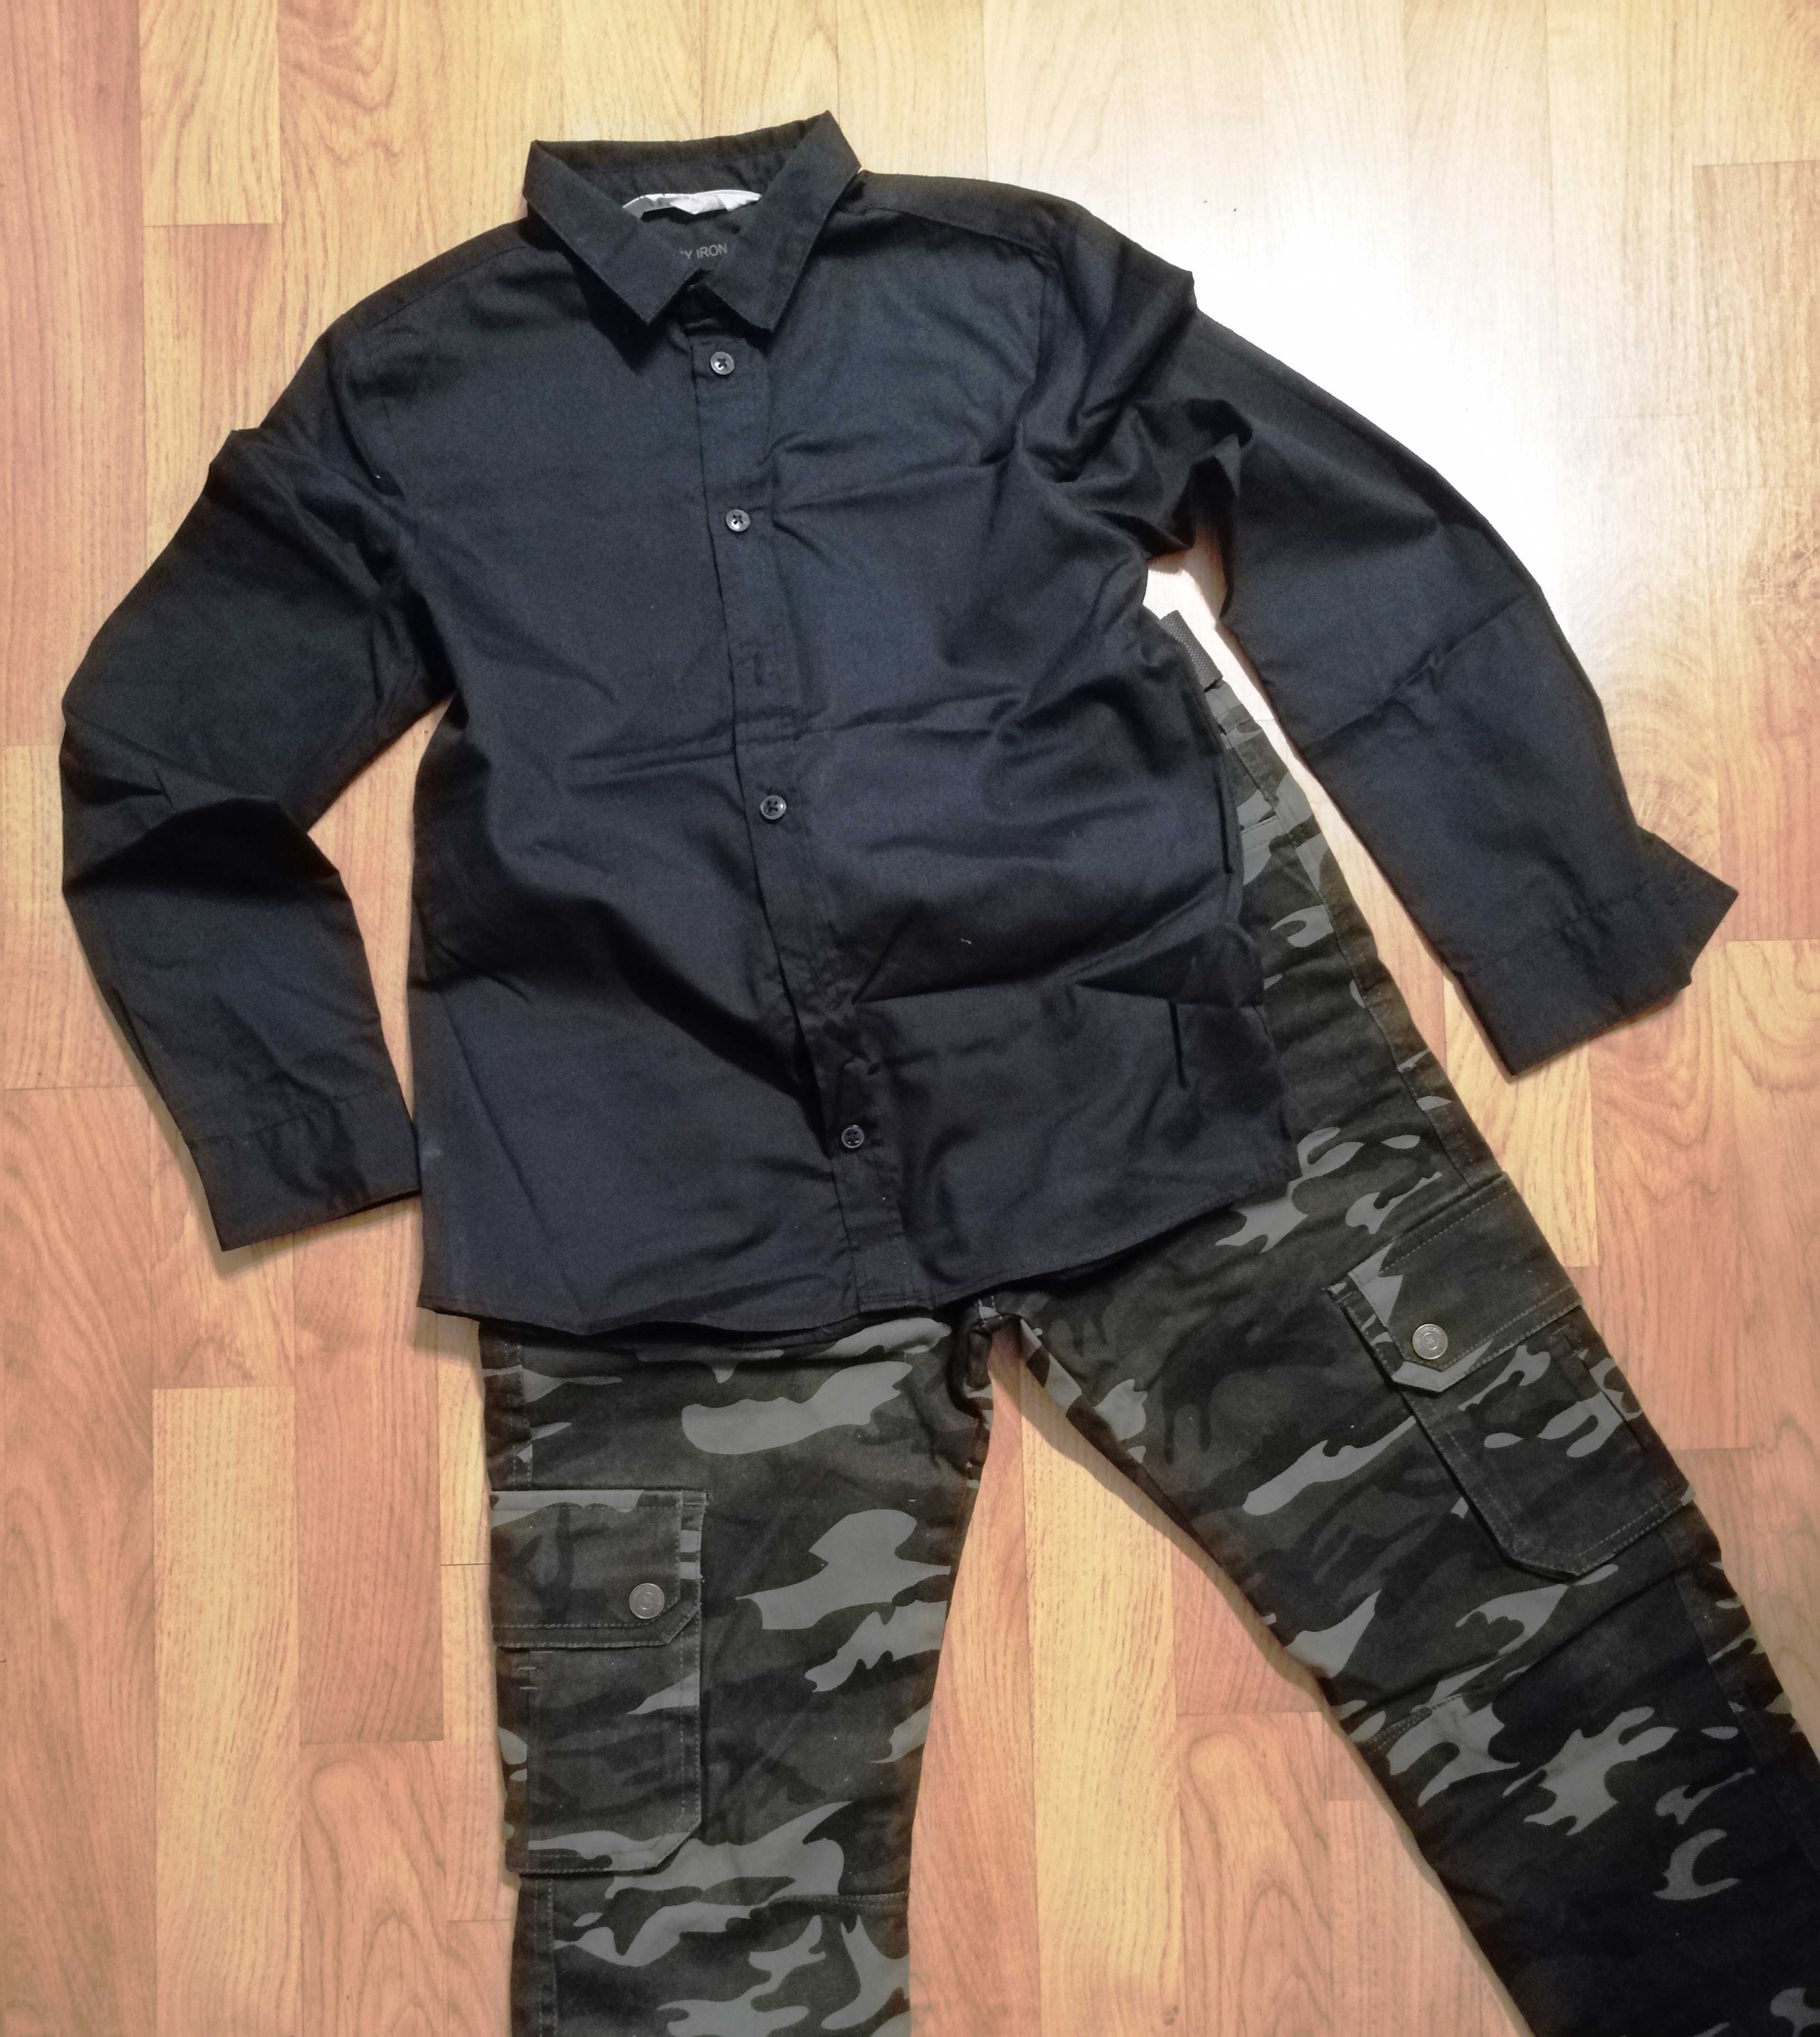 Modny chłopięcy komplet spodnie + koszula H&M + pasek rozm. 146, nowe